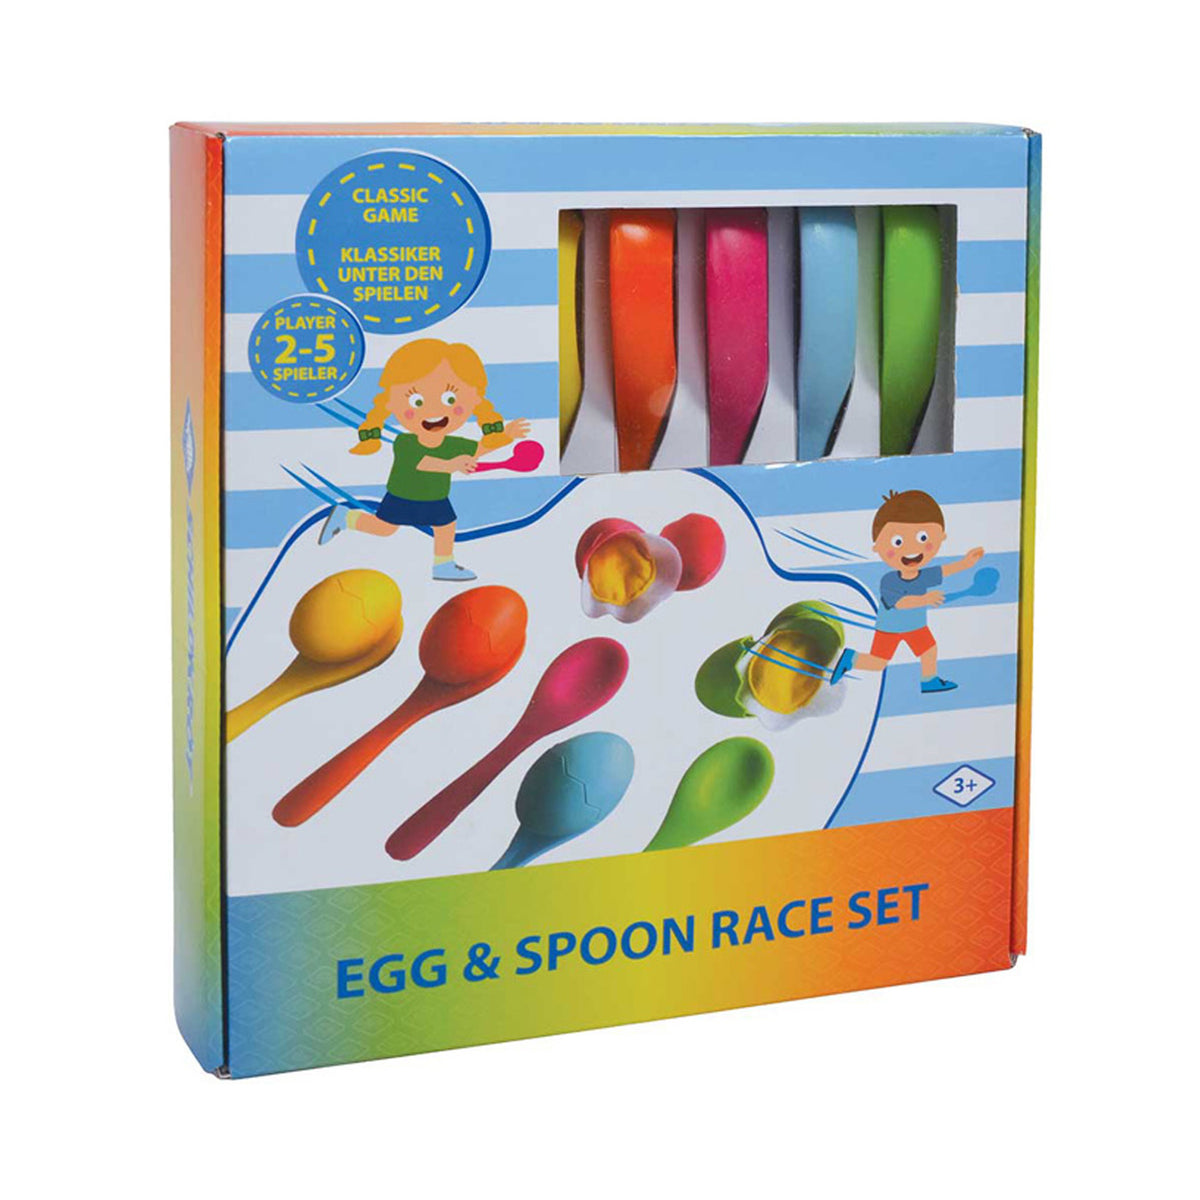 Schildkroet Egg and Spoon Race Set